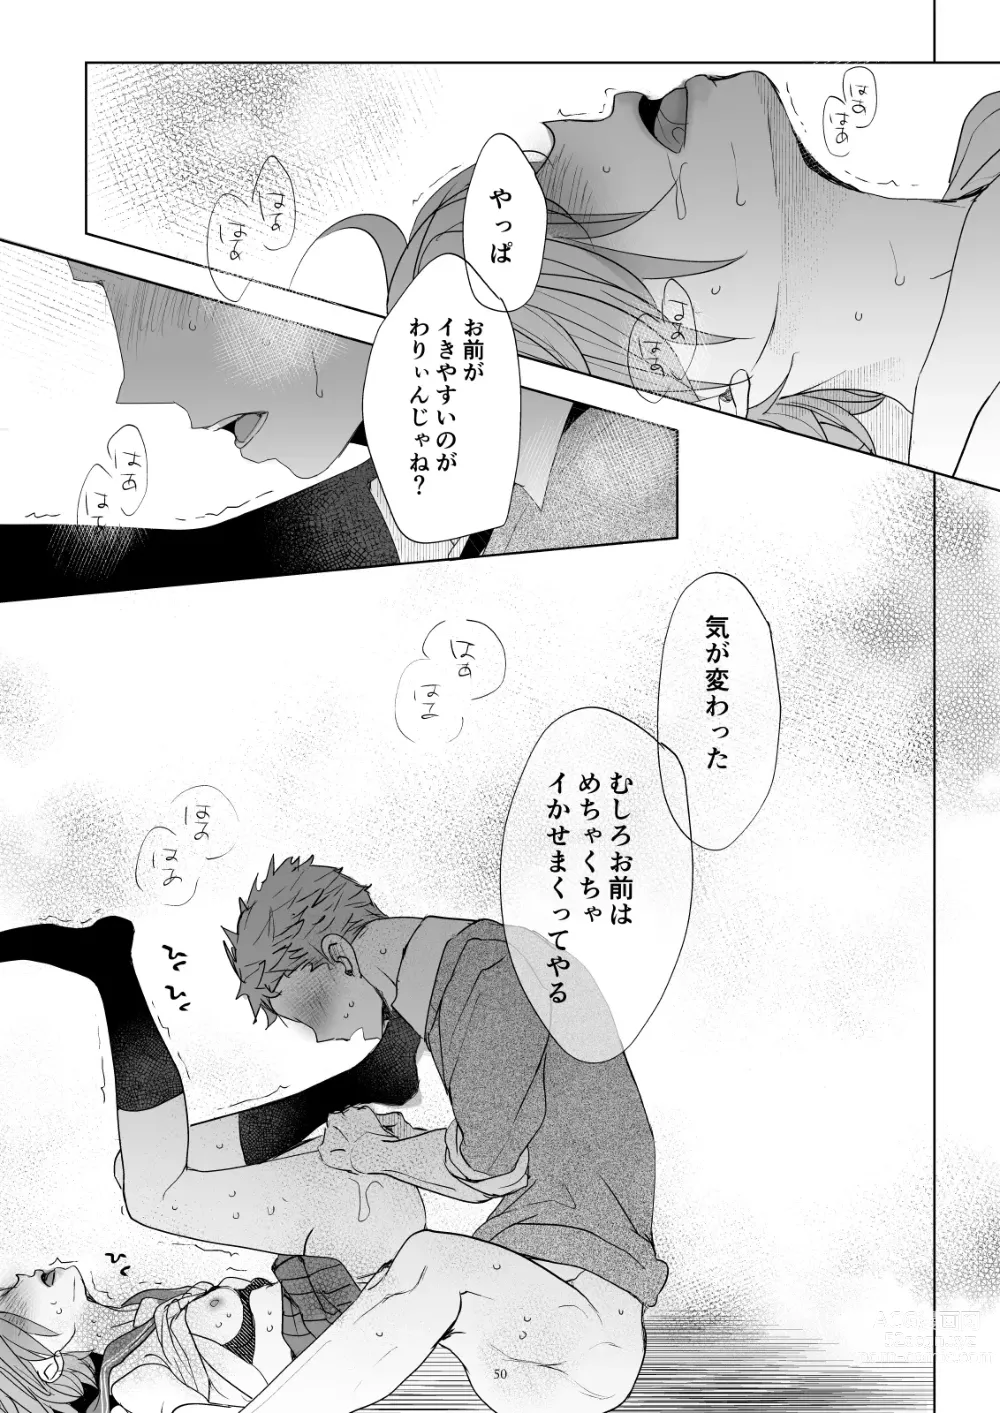 Page 49 of doujinshi Watashi to Ani no Nichijou 5